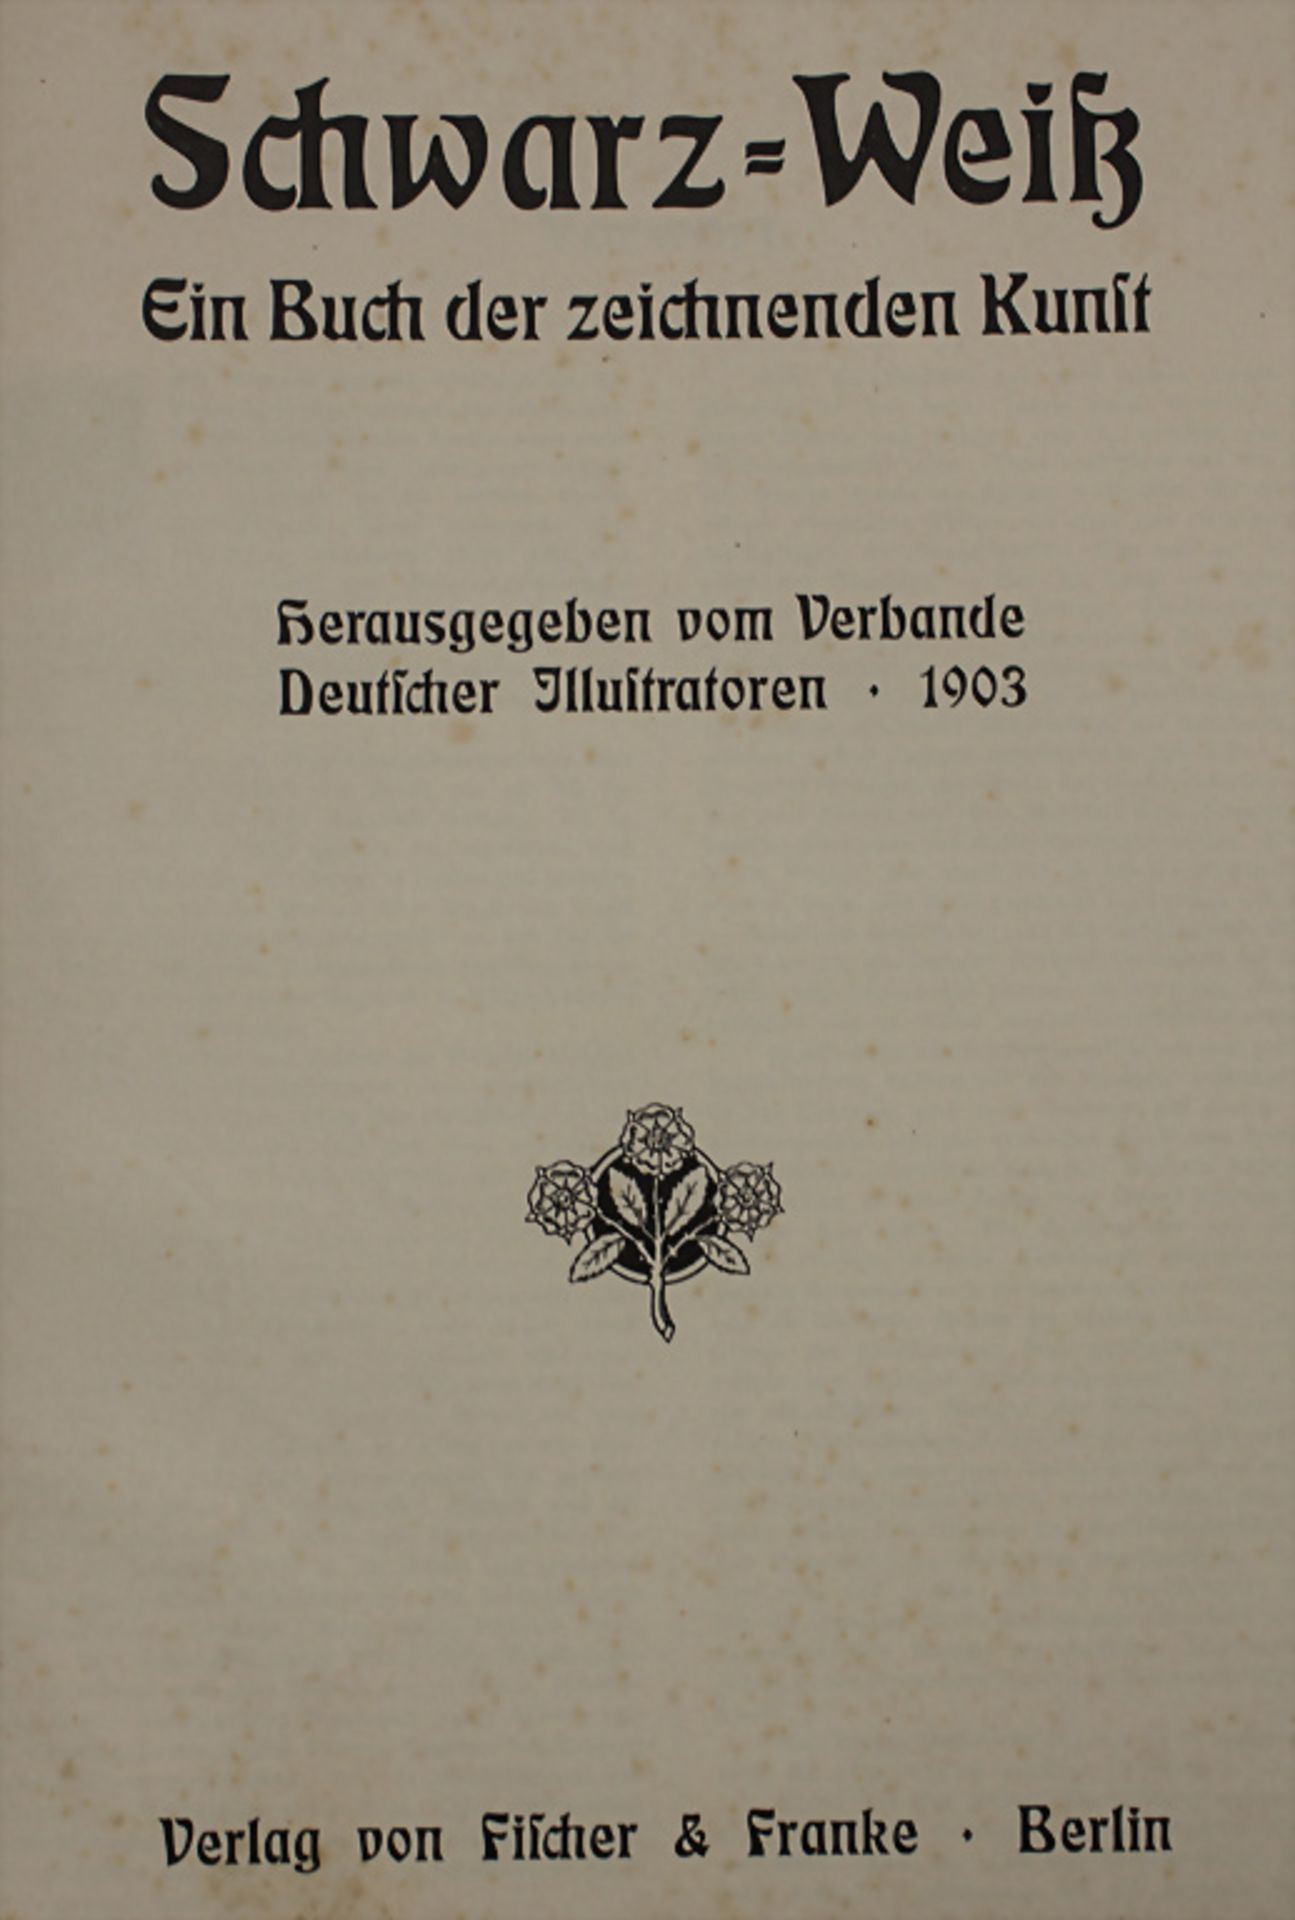 J. Schlattmann: 'Schwarz-Weiß. Ein Buch der zeichnenden Kunst', Berlin, 1903 - Bild 2 aus 3